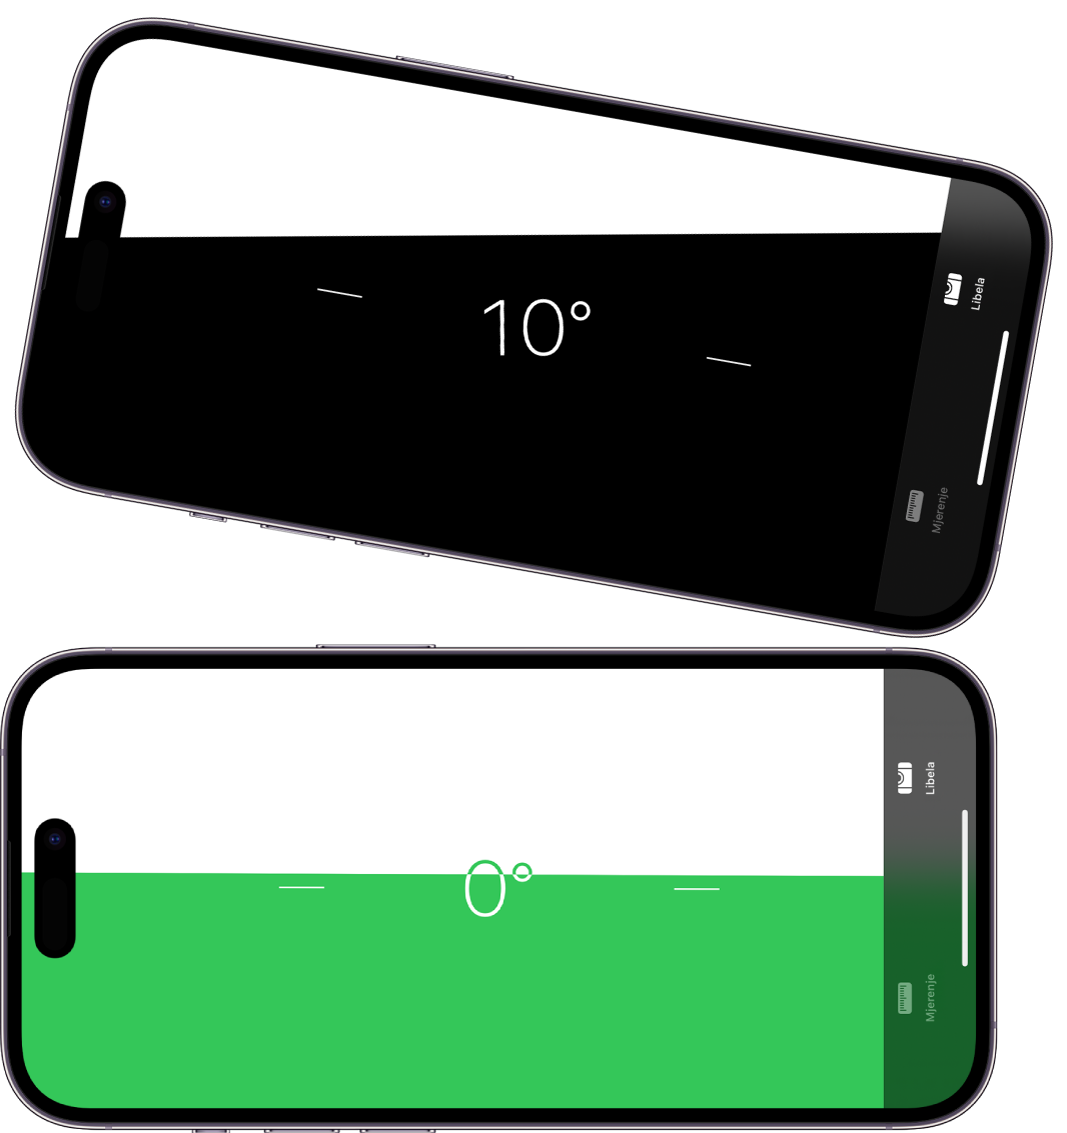 Zaslon razine u aplikaciji Mjerenje. Na vrhu je iPhone nagnut pod kutom od 10 stupnjeva; na dnu je poravnat.